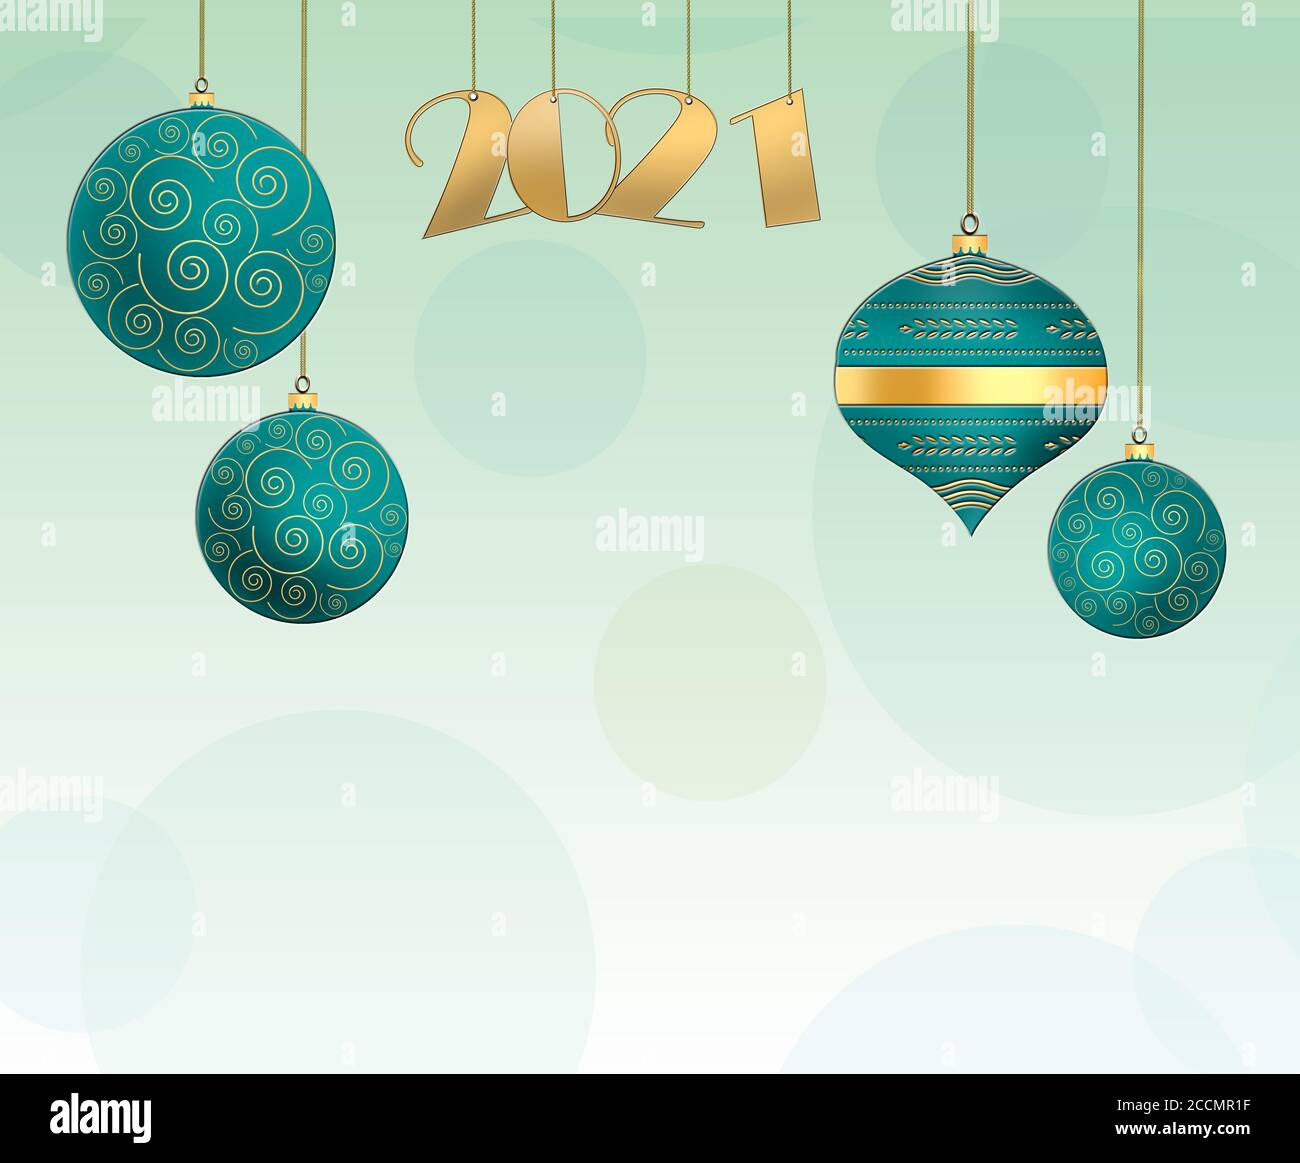 Fond de Noël avec boules bleu turquoise suspendues avec ornement d'or et chiffre d'or suspendu 2021 sur fond vert pastel. Copier l'espace. 3D illus Banque D'Images